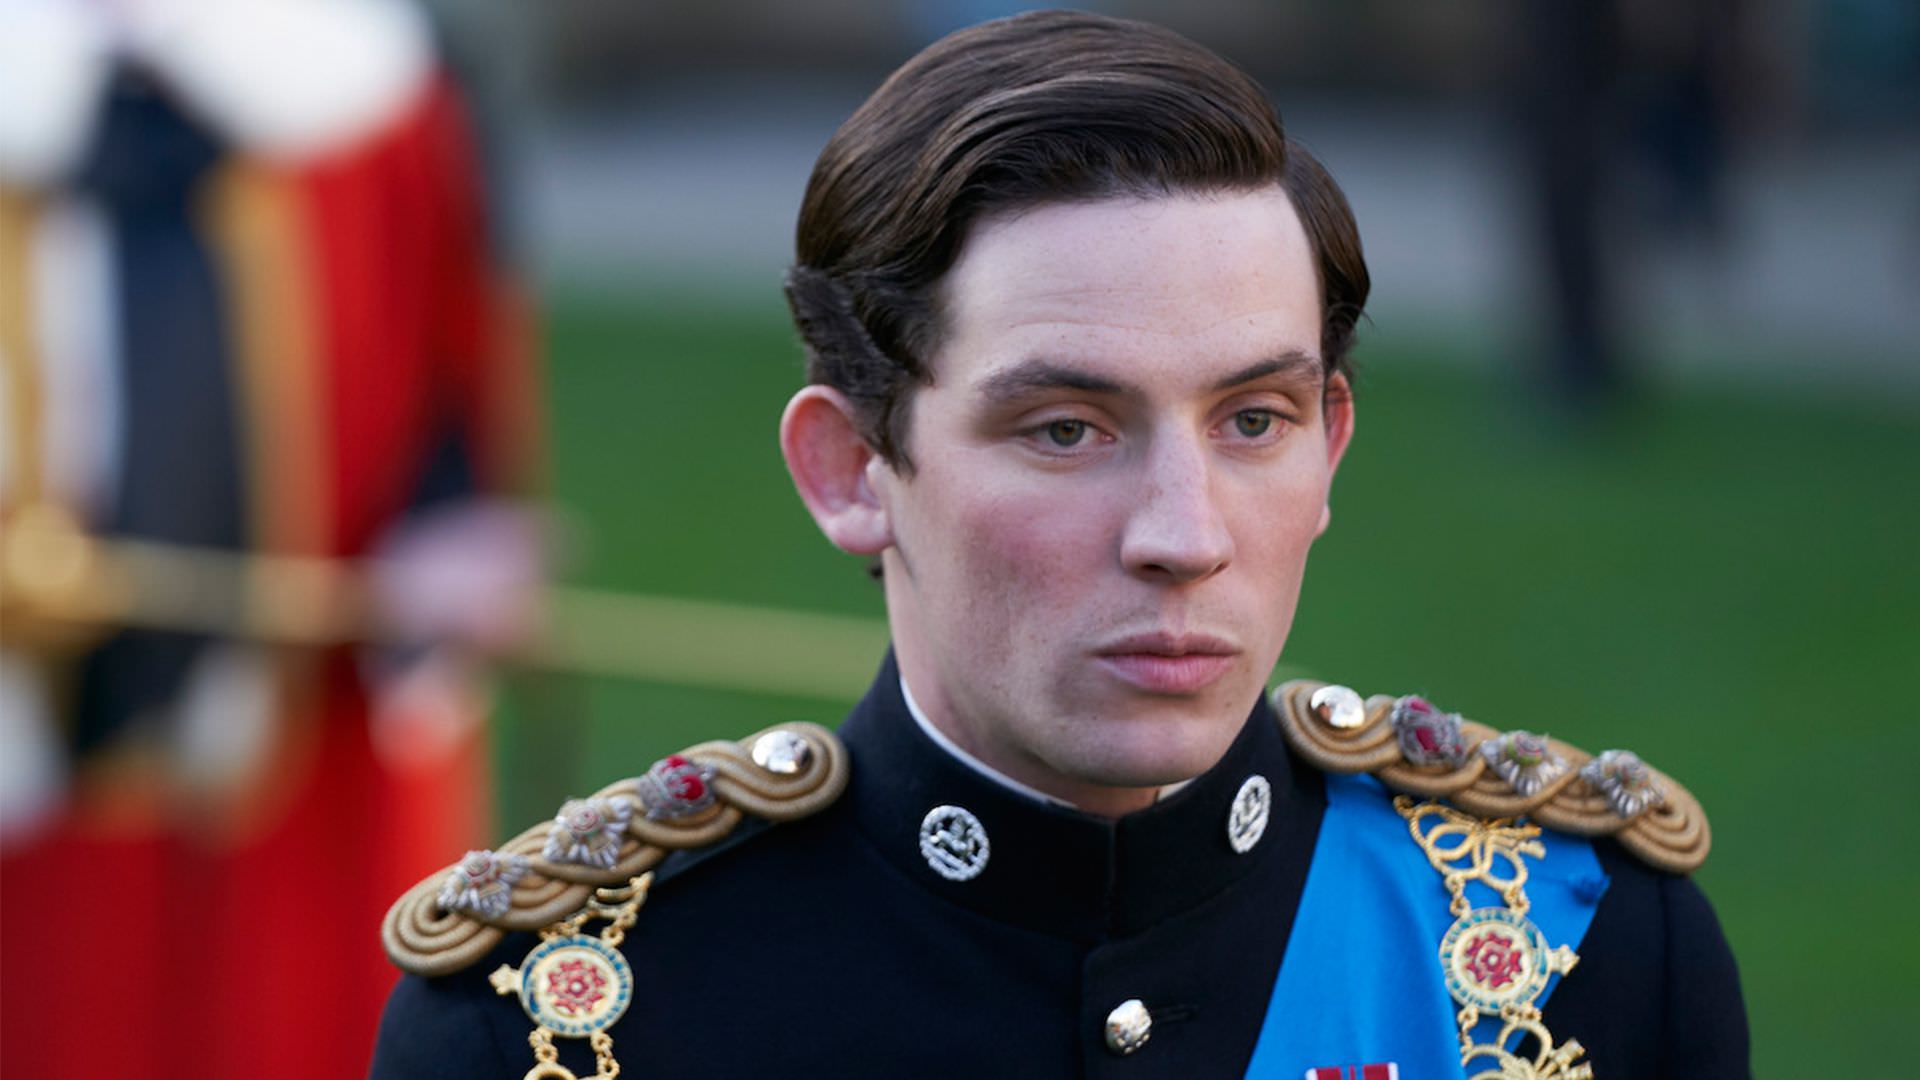 جاش اوکانر در نقش شاهزاده چارلز در فصل سوم سریال The Crown